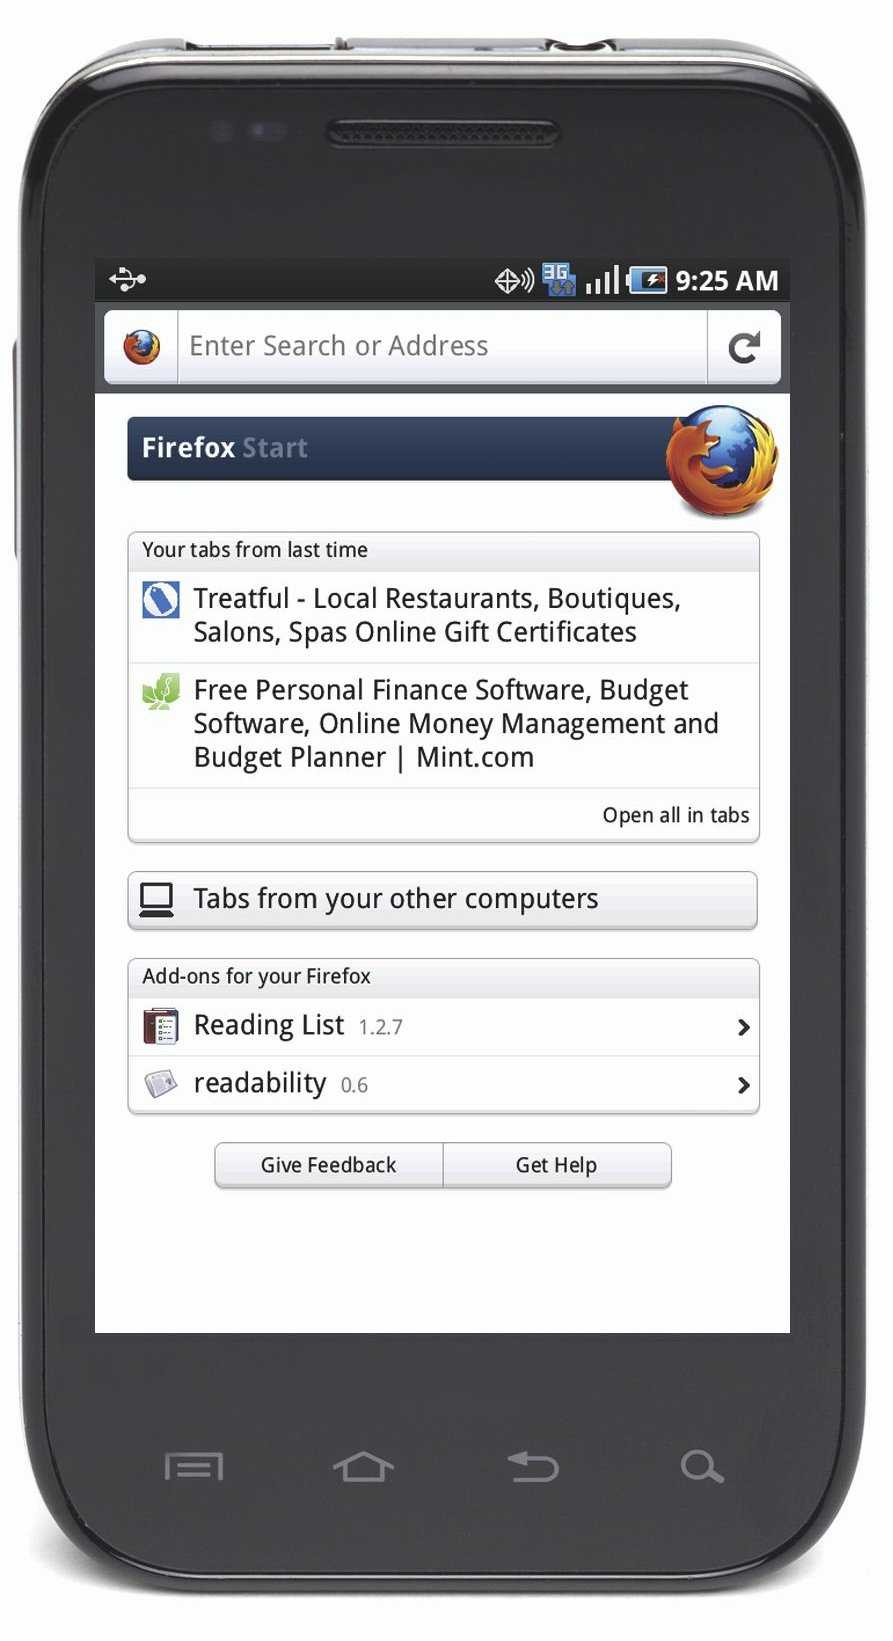 Le navigateur Firefox 4 sur un mobile Android. © Mozilla